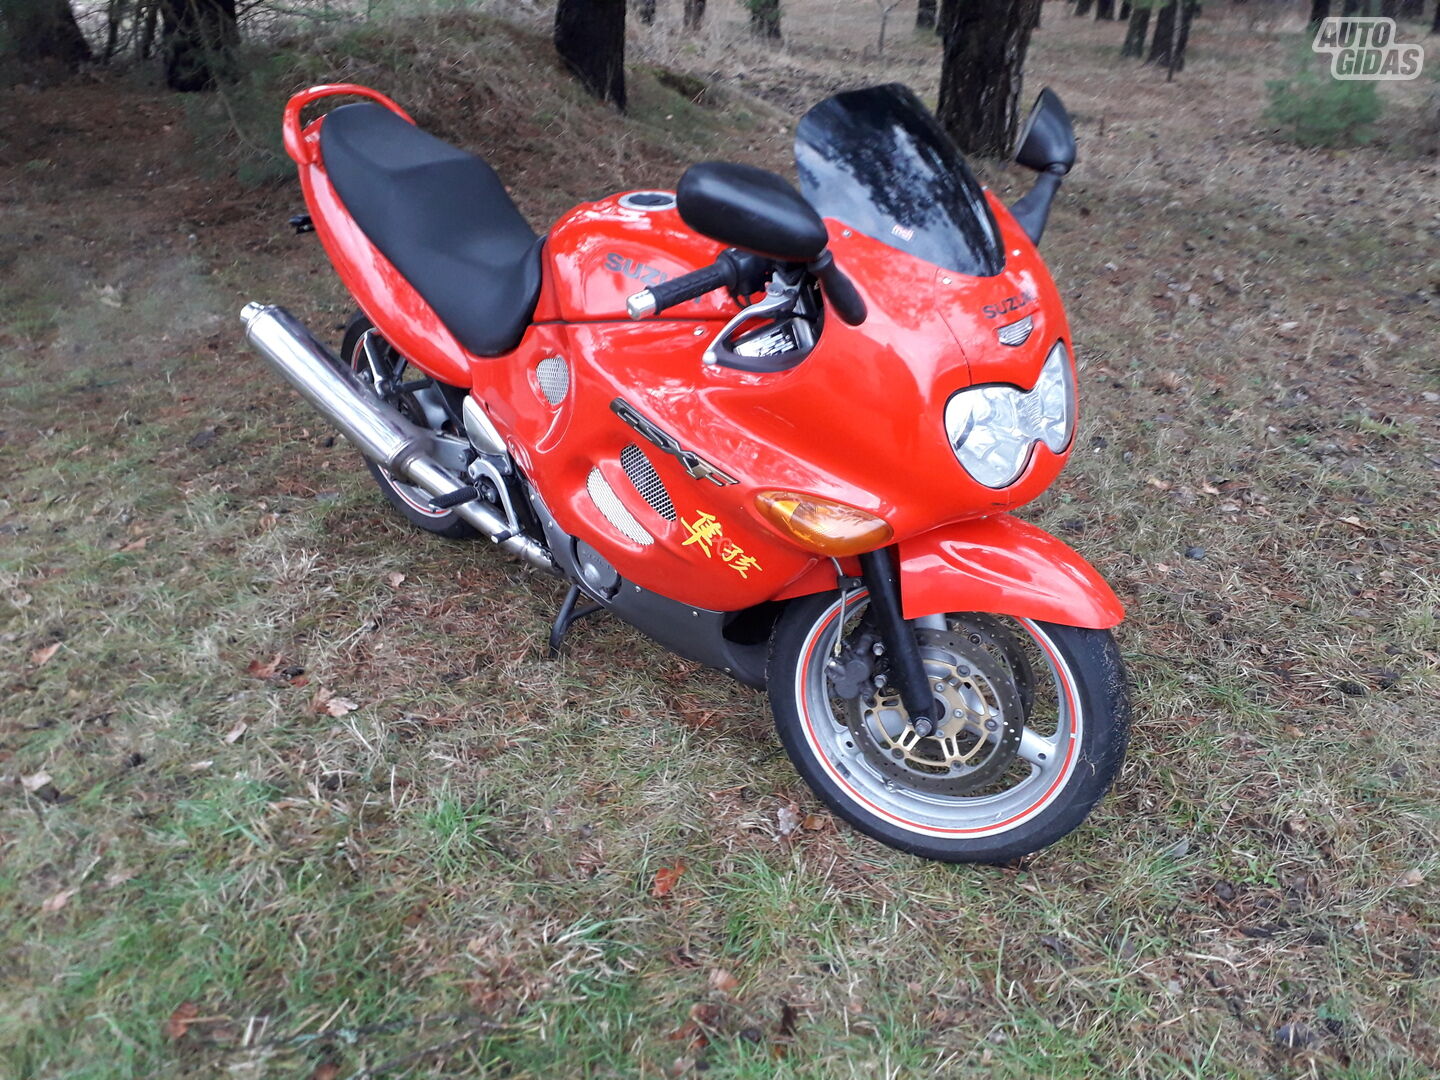 Suzuki GSX-F / Katana 1998 y Sport / Superbike motorcycle